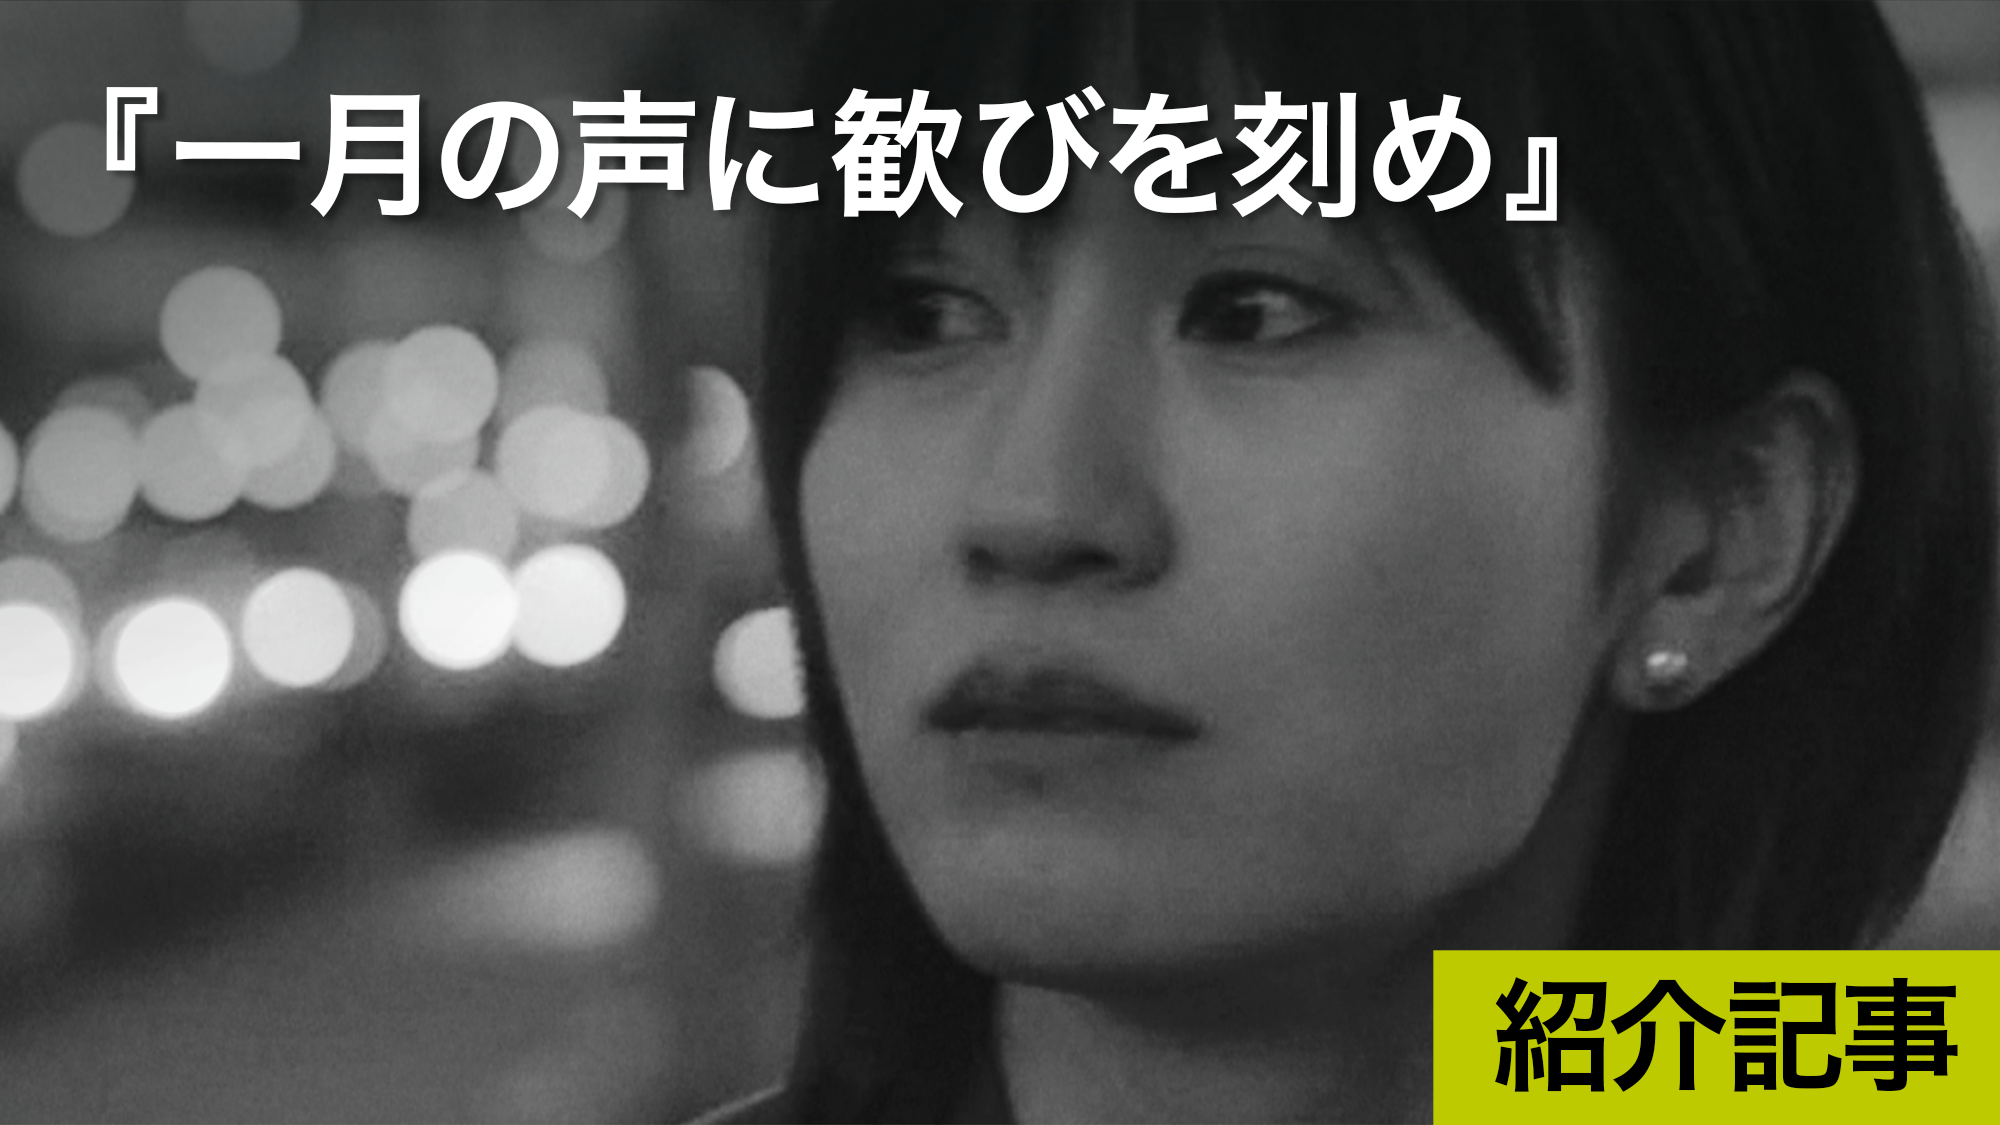 『一月の声に歓びを刻め』三島有紀子監督自身が体験した47年前のある事件をモチーフに「性暴力と心の傷」というテーマで作られた映画